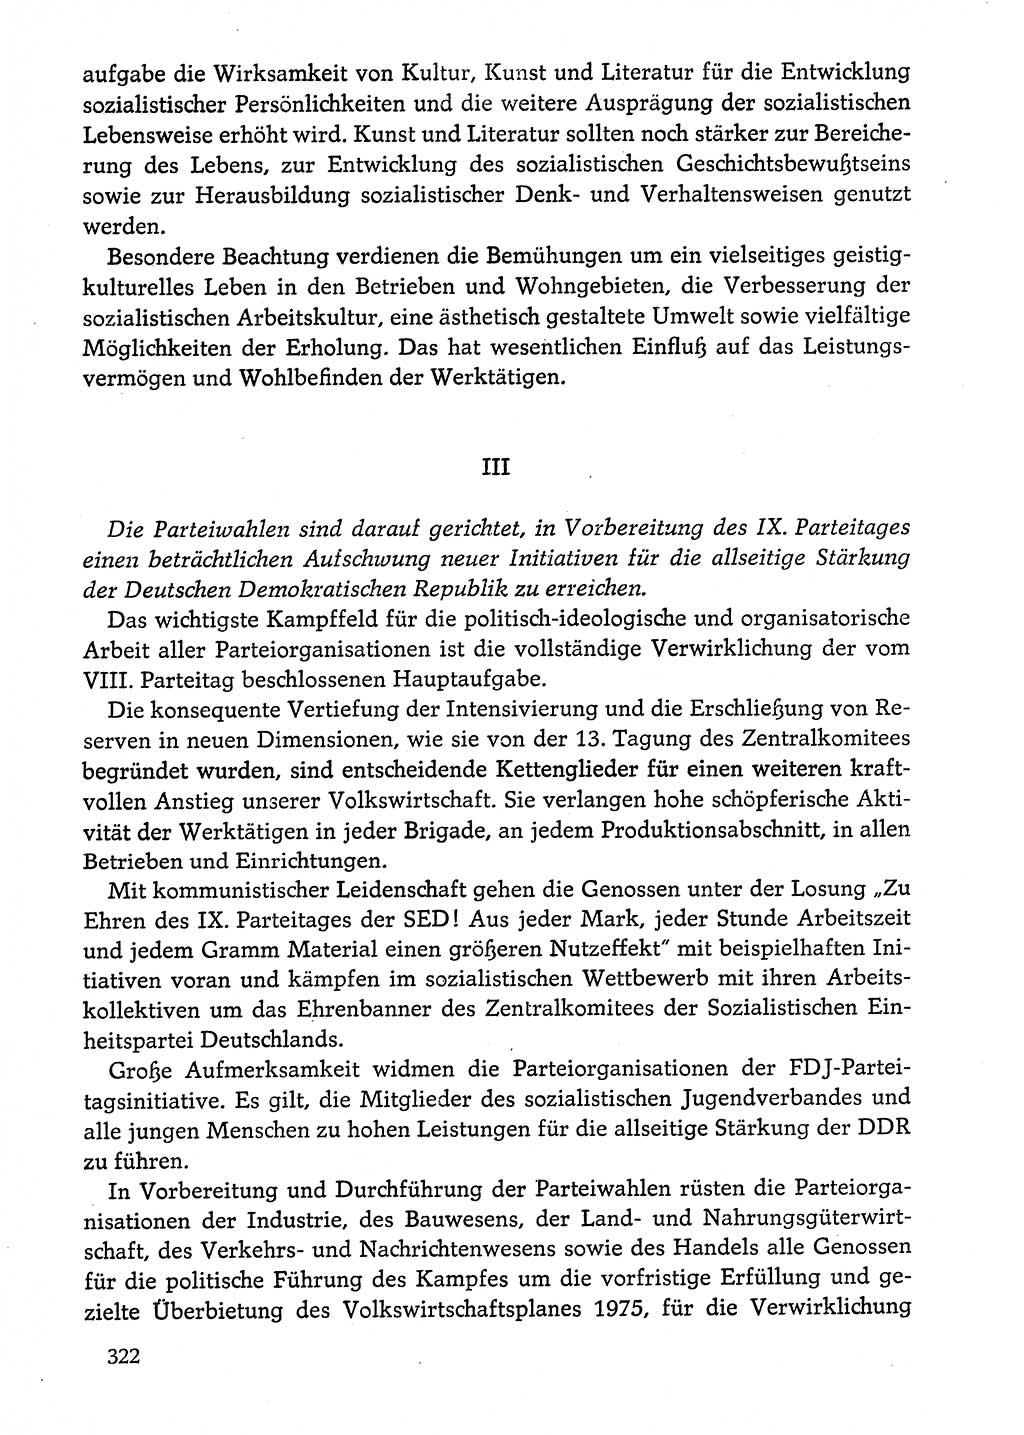 Dokumente der Sozialistischen Einheitspartei Deutschlands (SED) [Deutsche Demokratische Republik (DDR)] 1974-1975, Seite 322 (Dok. SED DDR 1978, Bd. ⅩⅤ, S. 322)